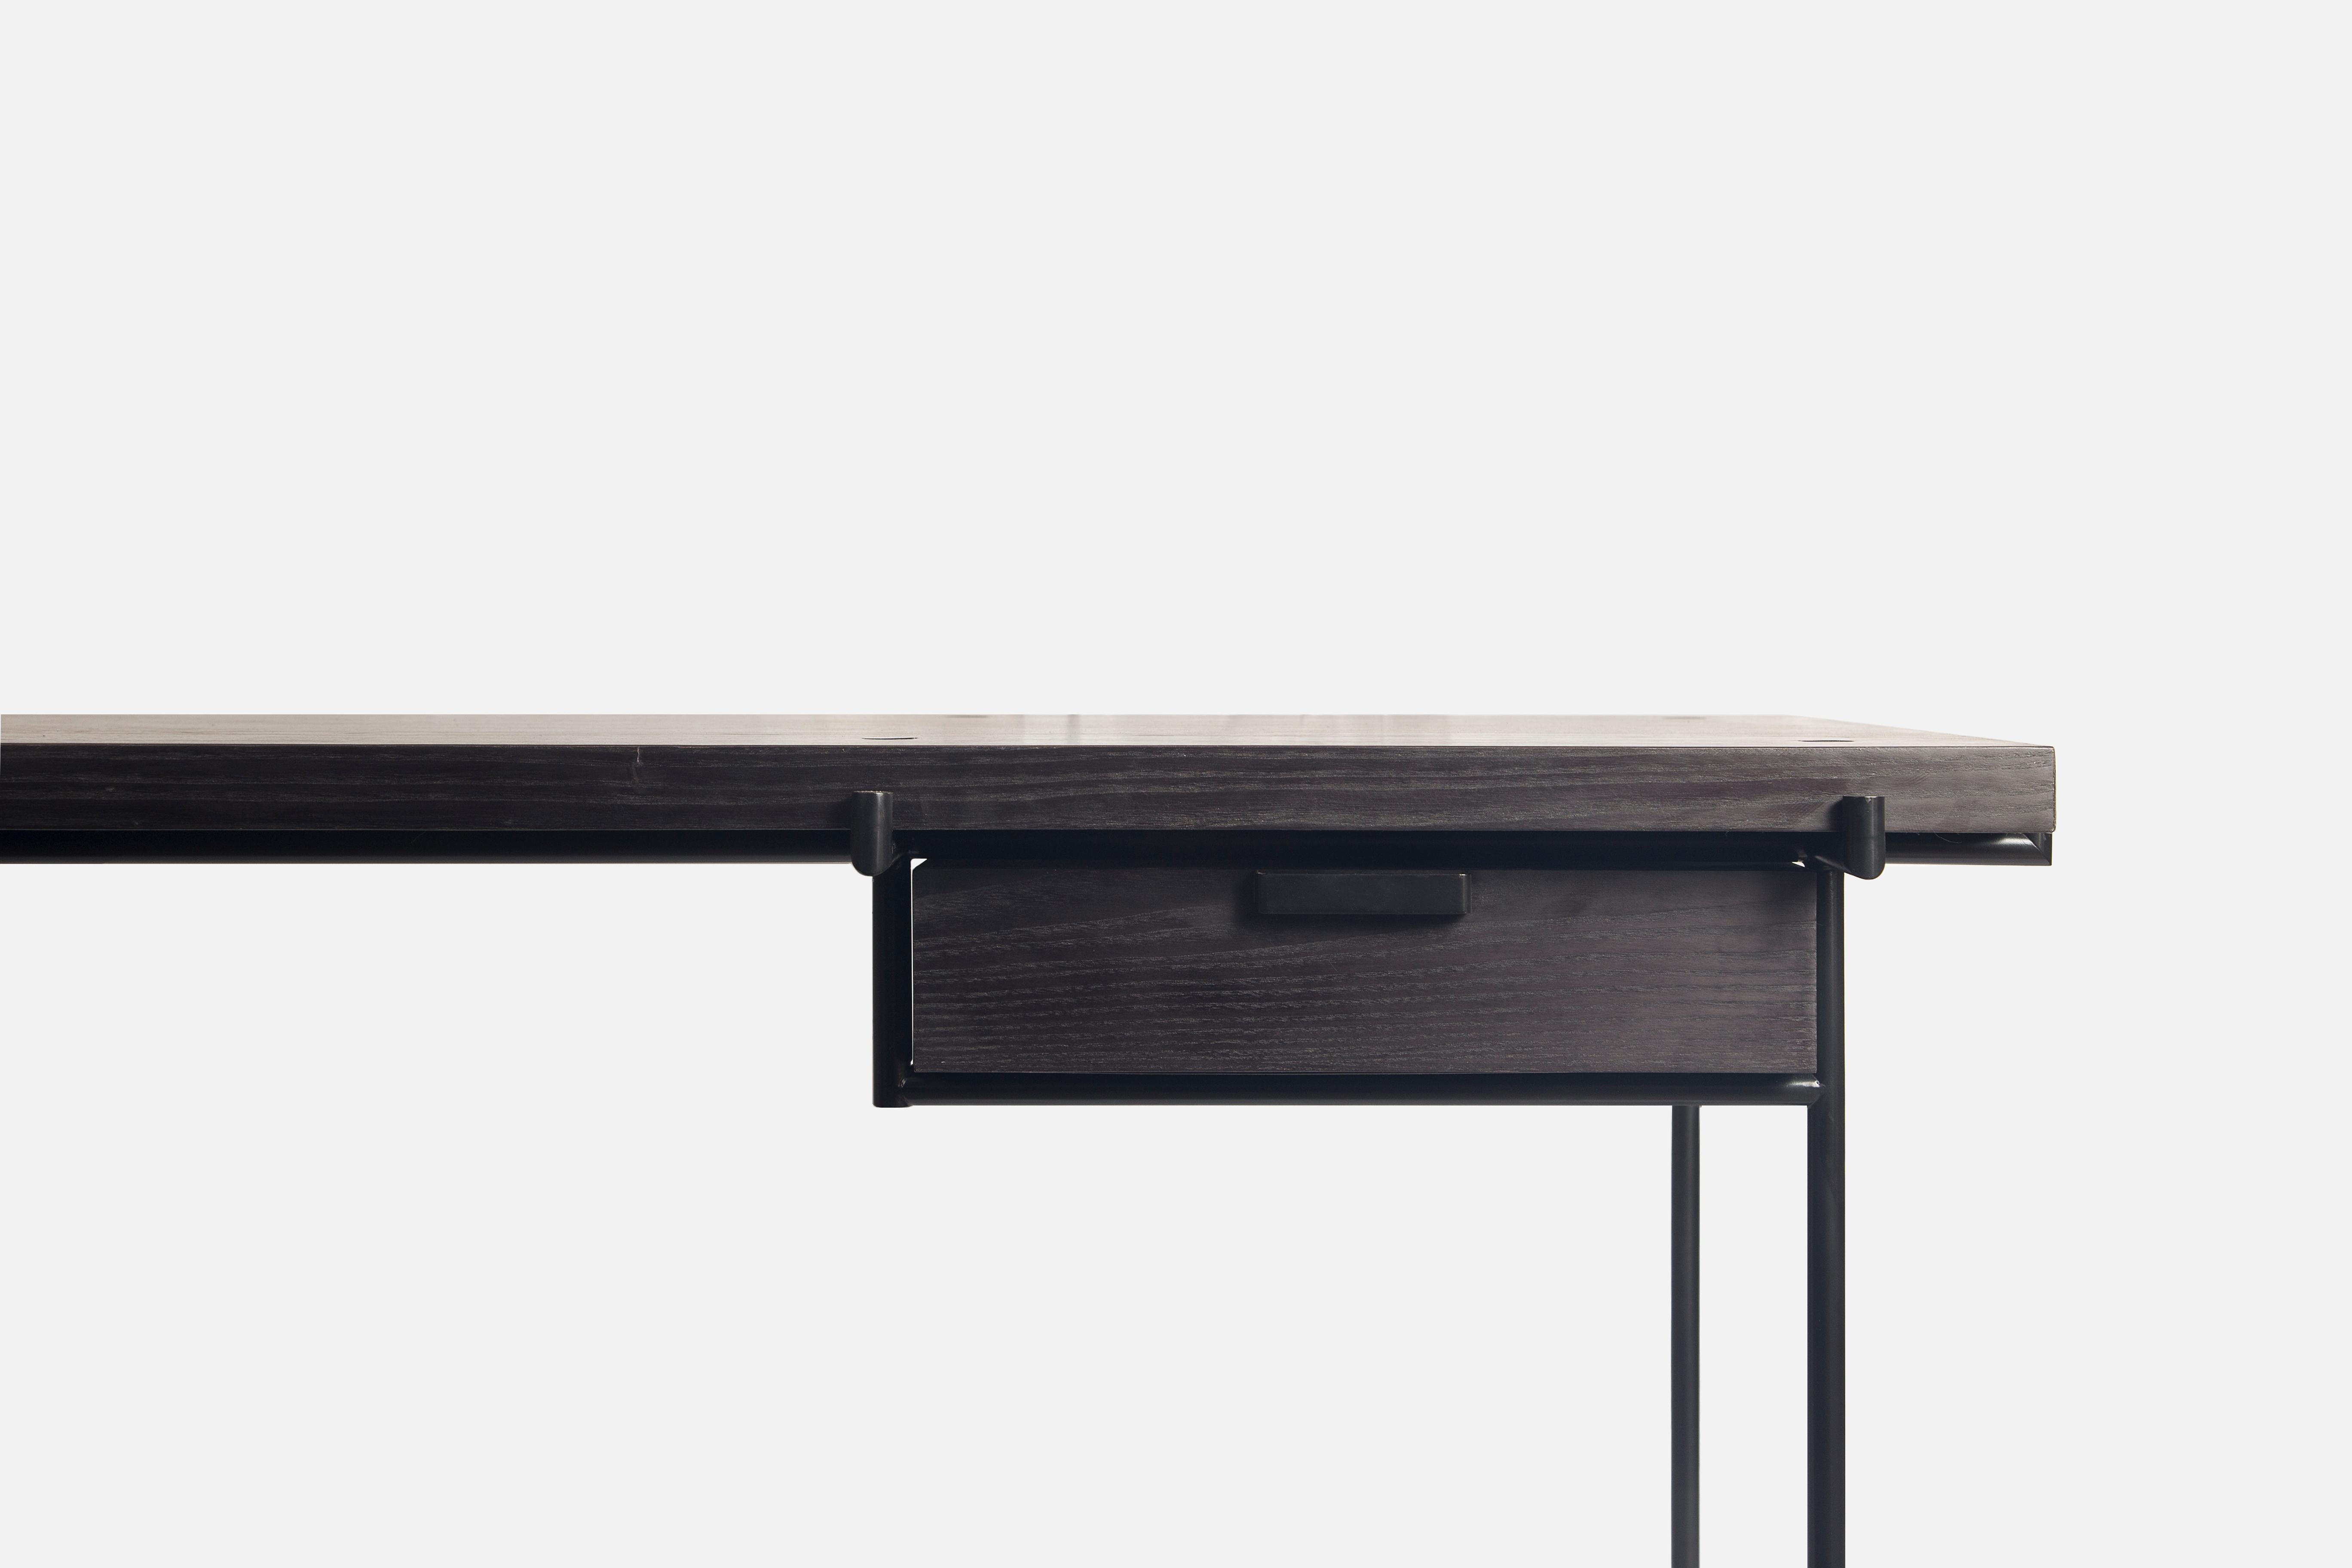 Le bureau à tiroirs Marajoara est une étude sur le mobilier utilitaire du milieu du siècle dernier, minimaliste dans ses détails, avec une référence à l'art natif brésilien. Par Atelier BAM Design.

Le style Design/One moderne est l'un des